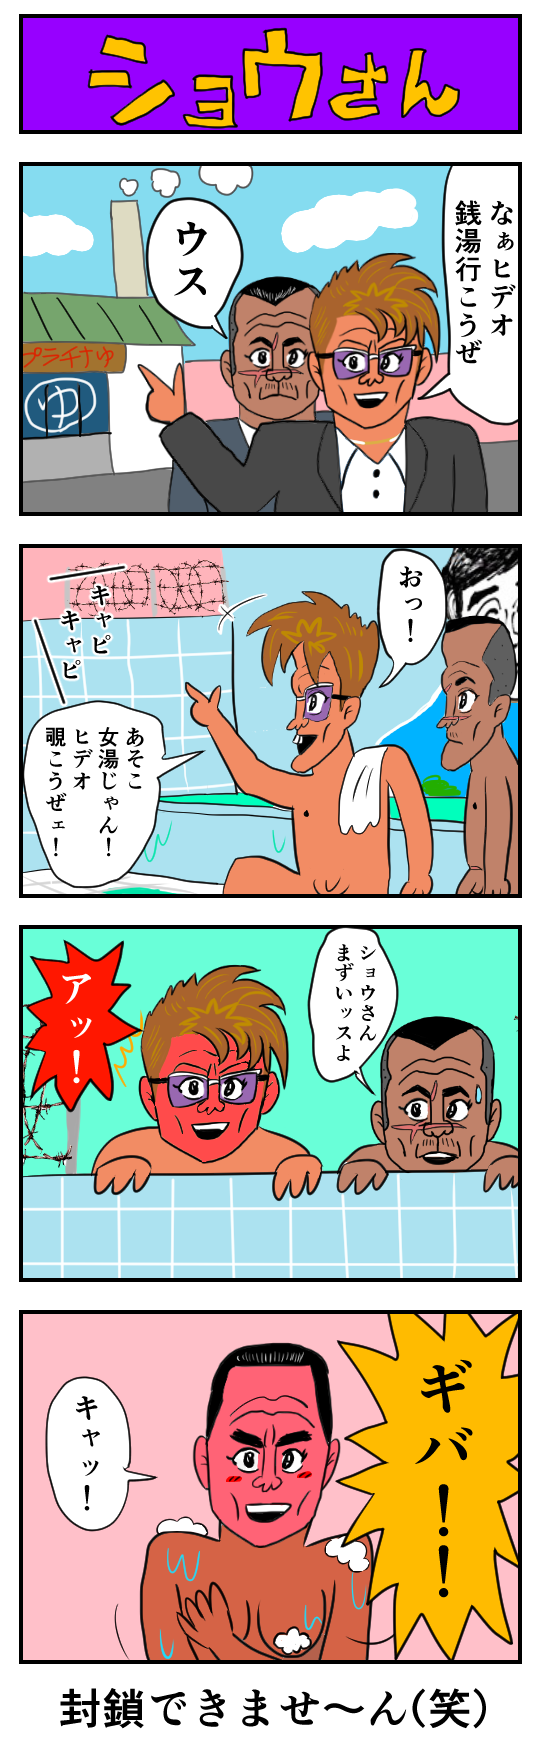 【4コマ漫画】ショウさん